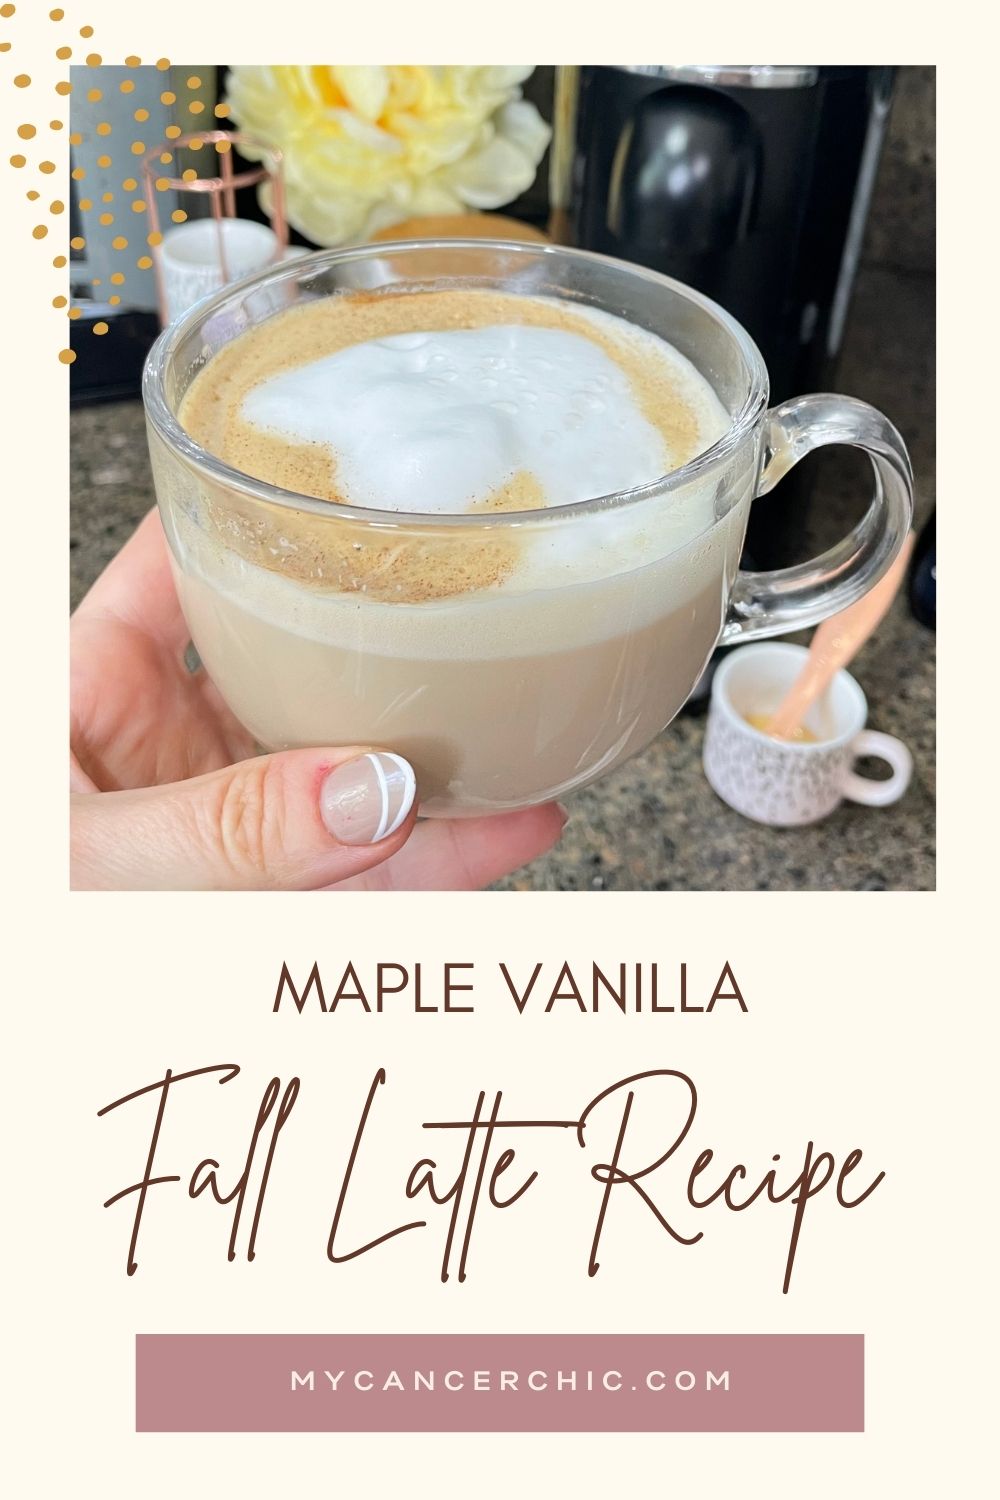 Fall coffee recipes - Maple Vanilla latte